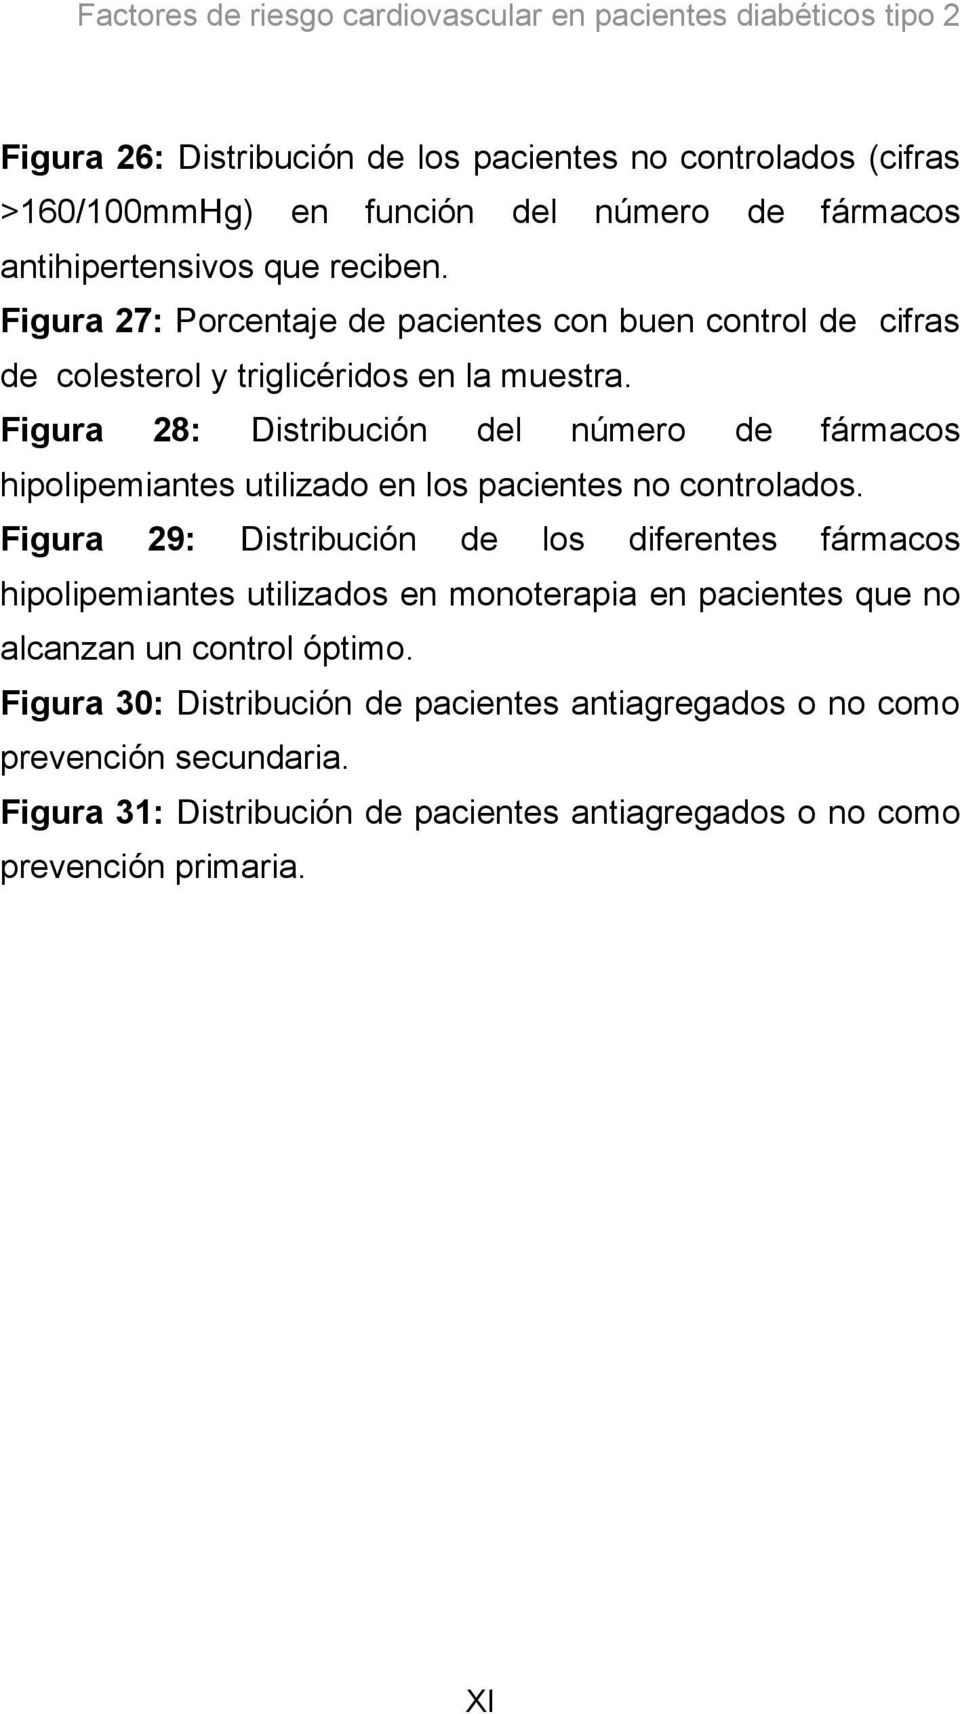 Figura 28: Distribución del número de fármacos hipolipemiantes utilizado en los pacientes no controlados.